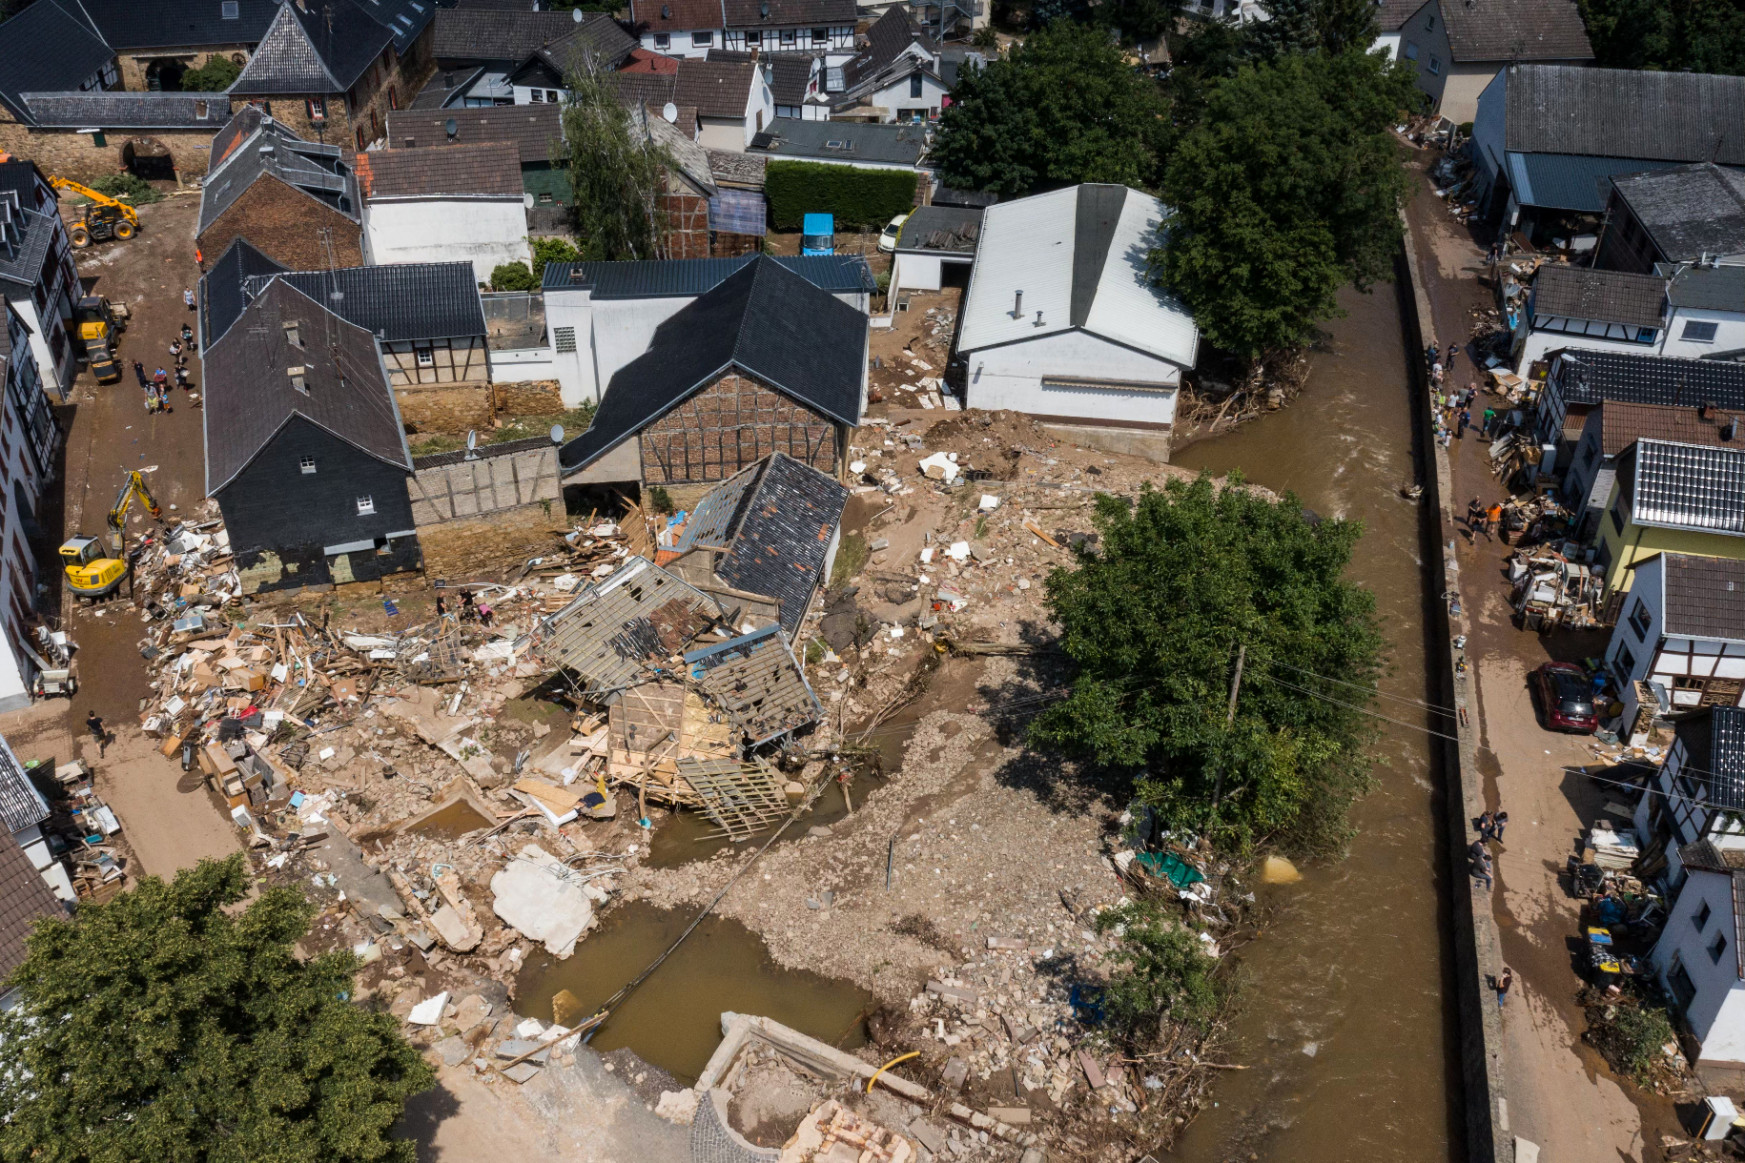 A német hatóságok már napokkal korábban tudták, hogy jön az árvíz, mégsem tudtak felkészülni